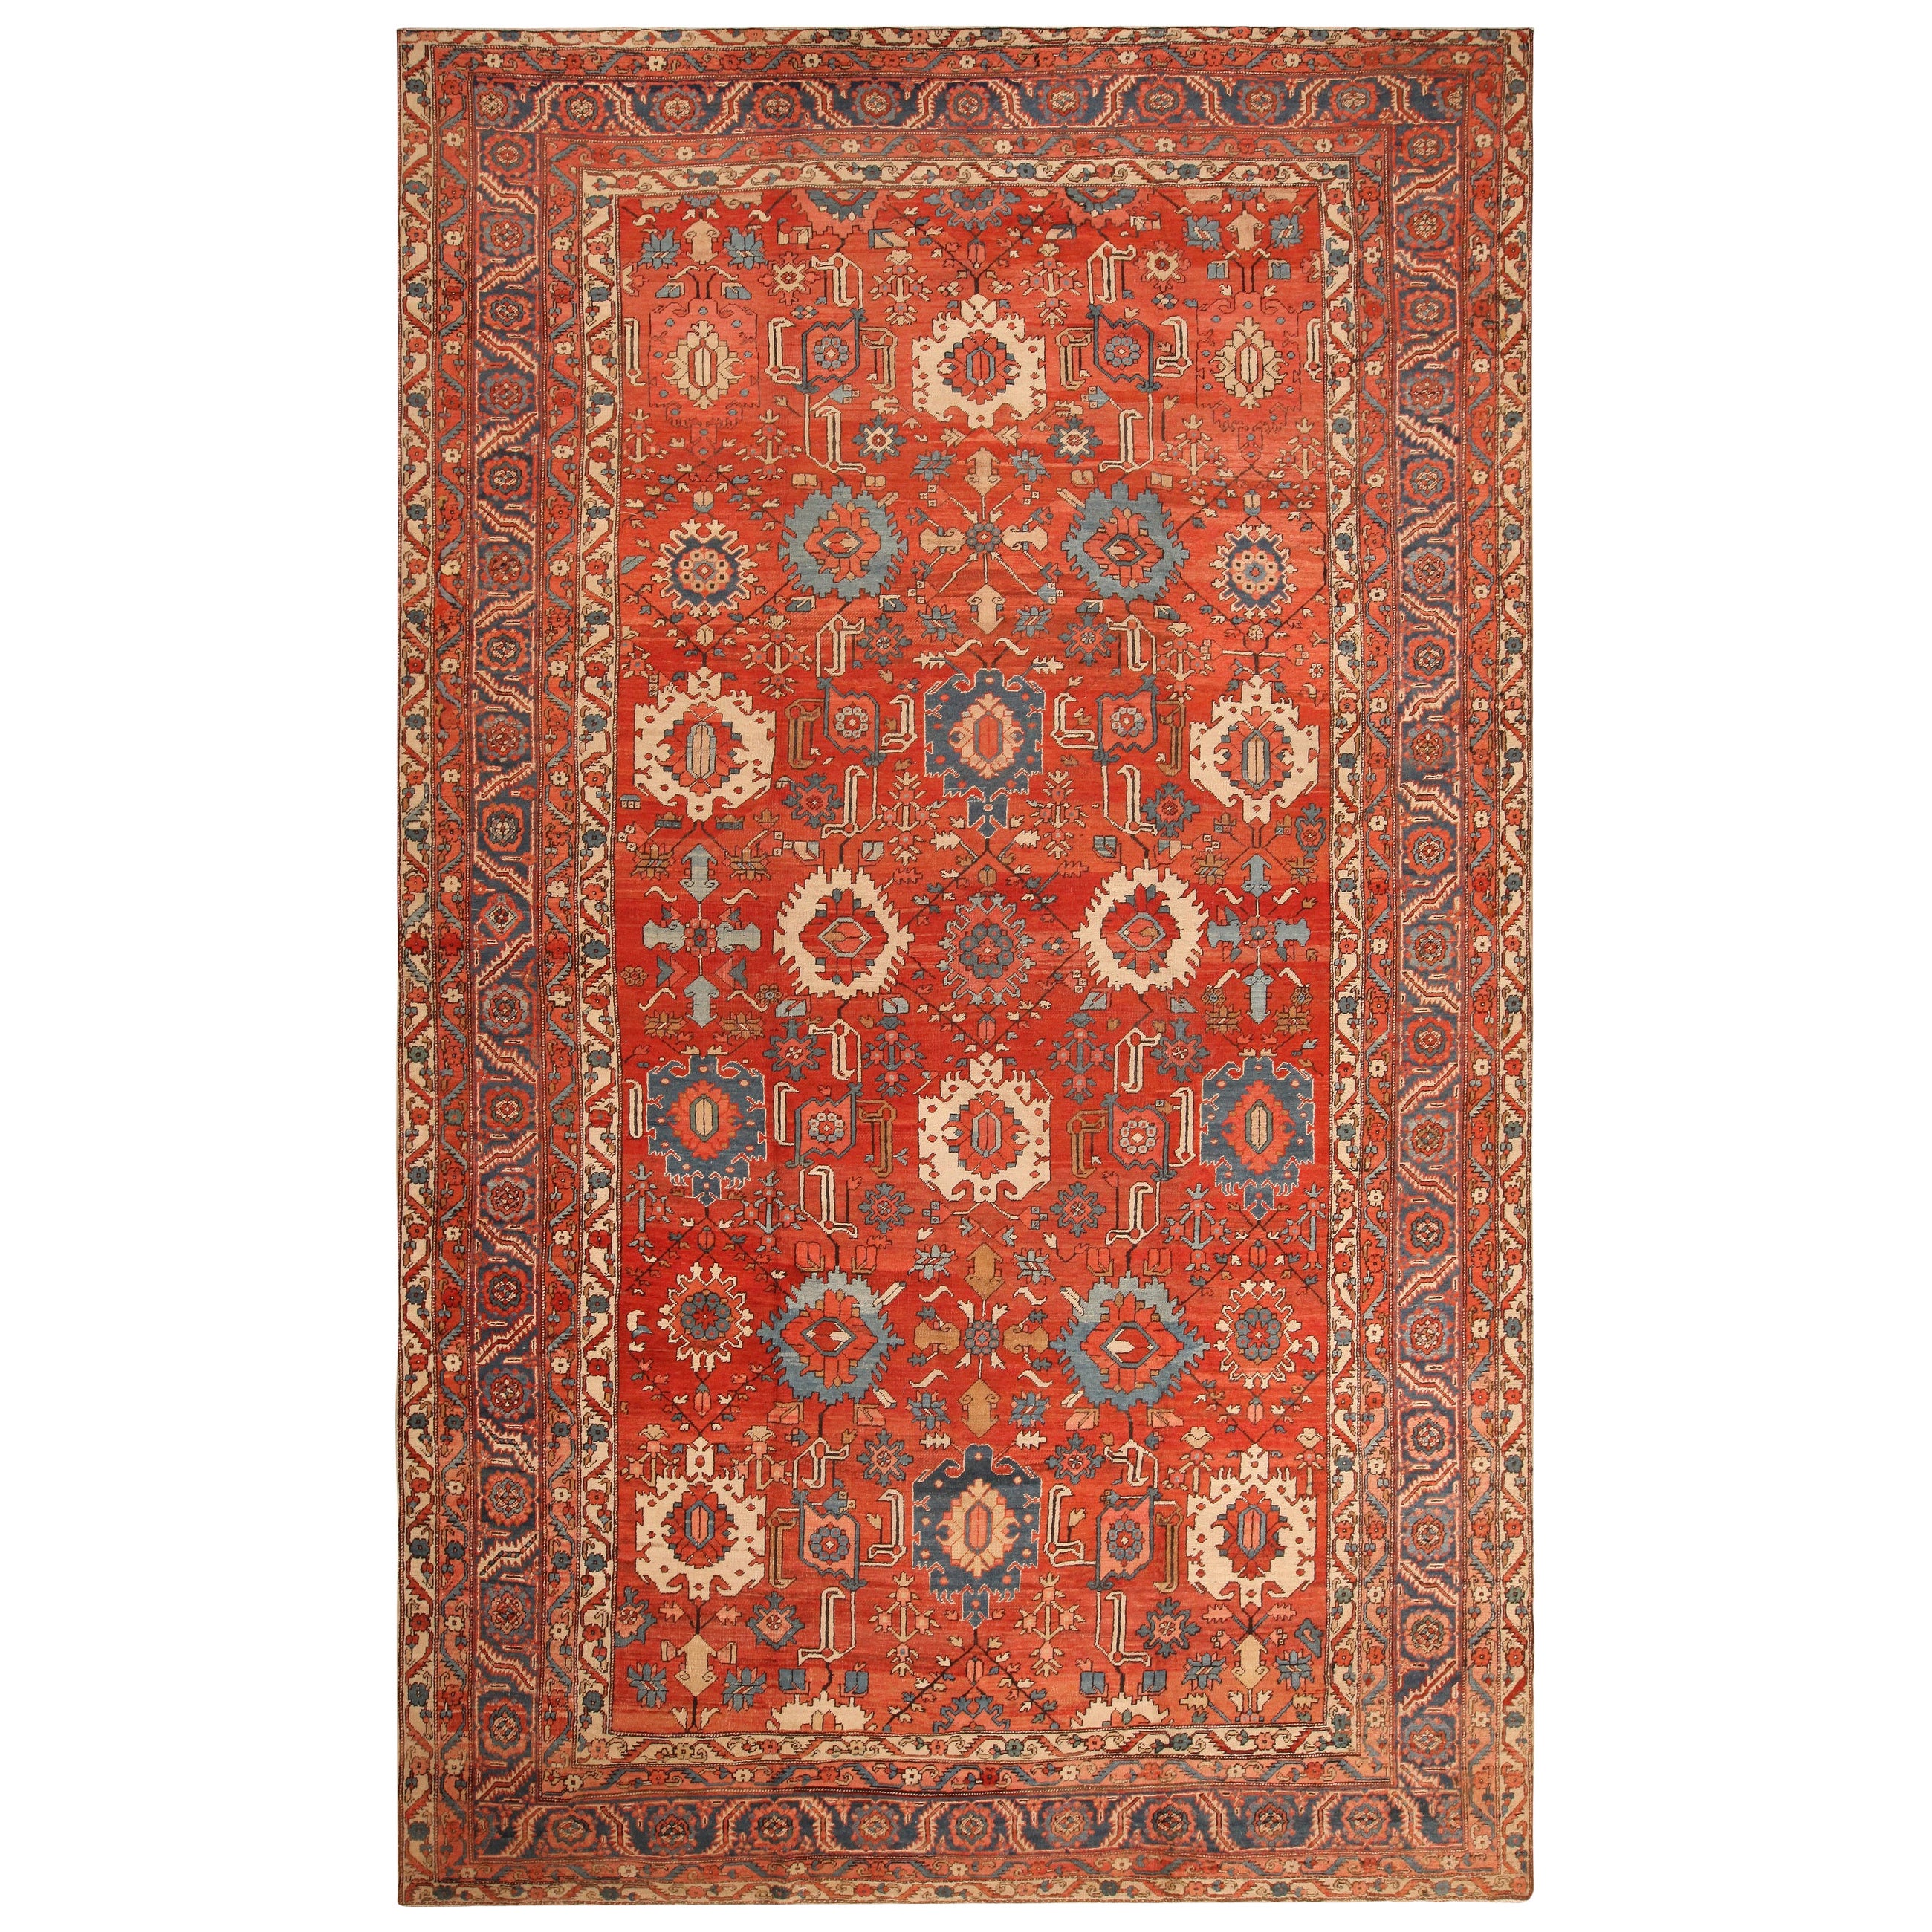 Antique Persian Heriz Rug. Size: 11 ft x 18 ft 5 in